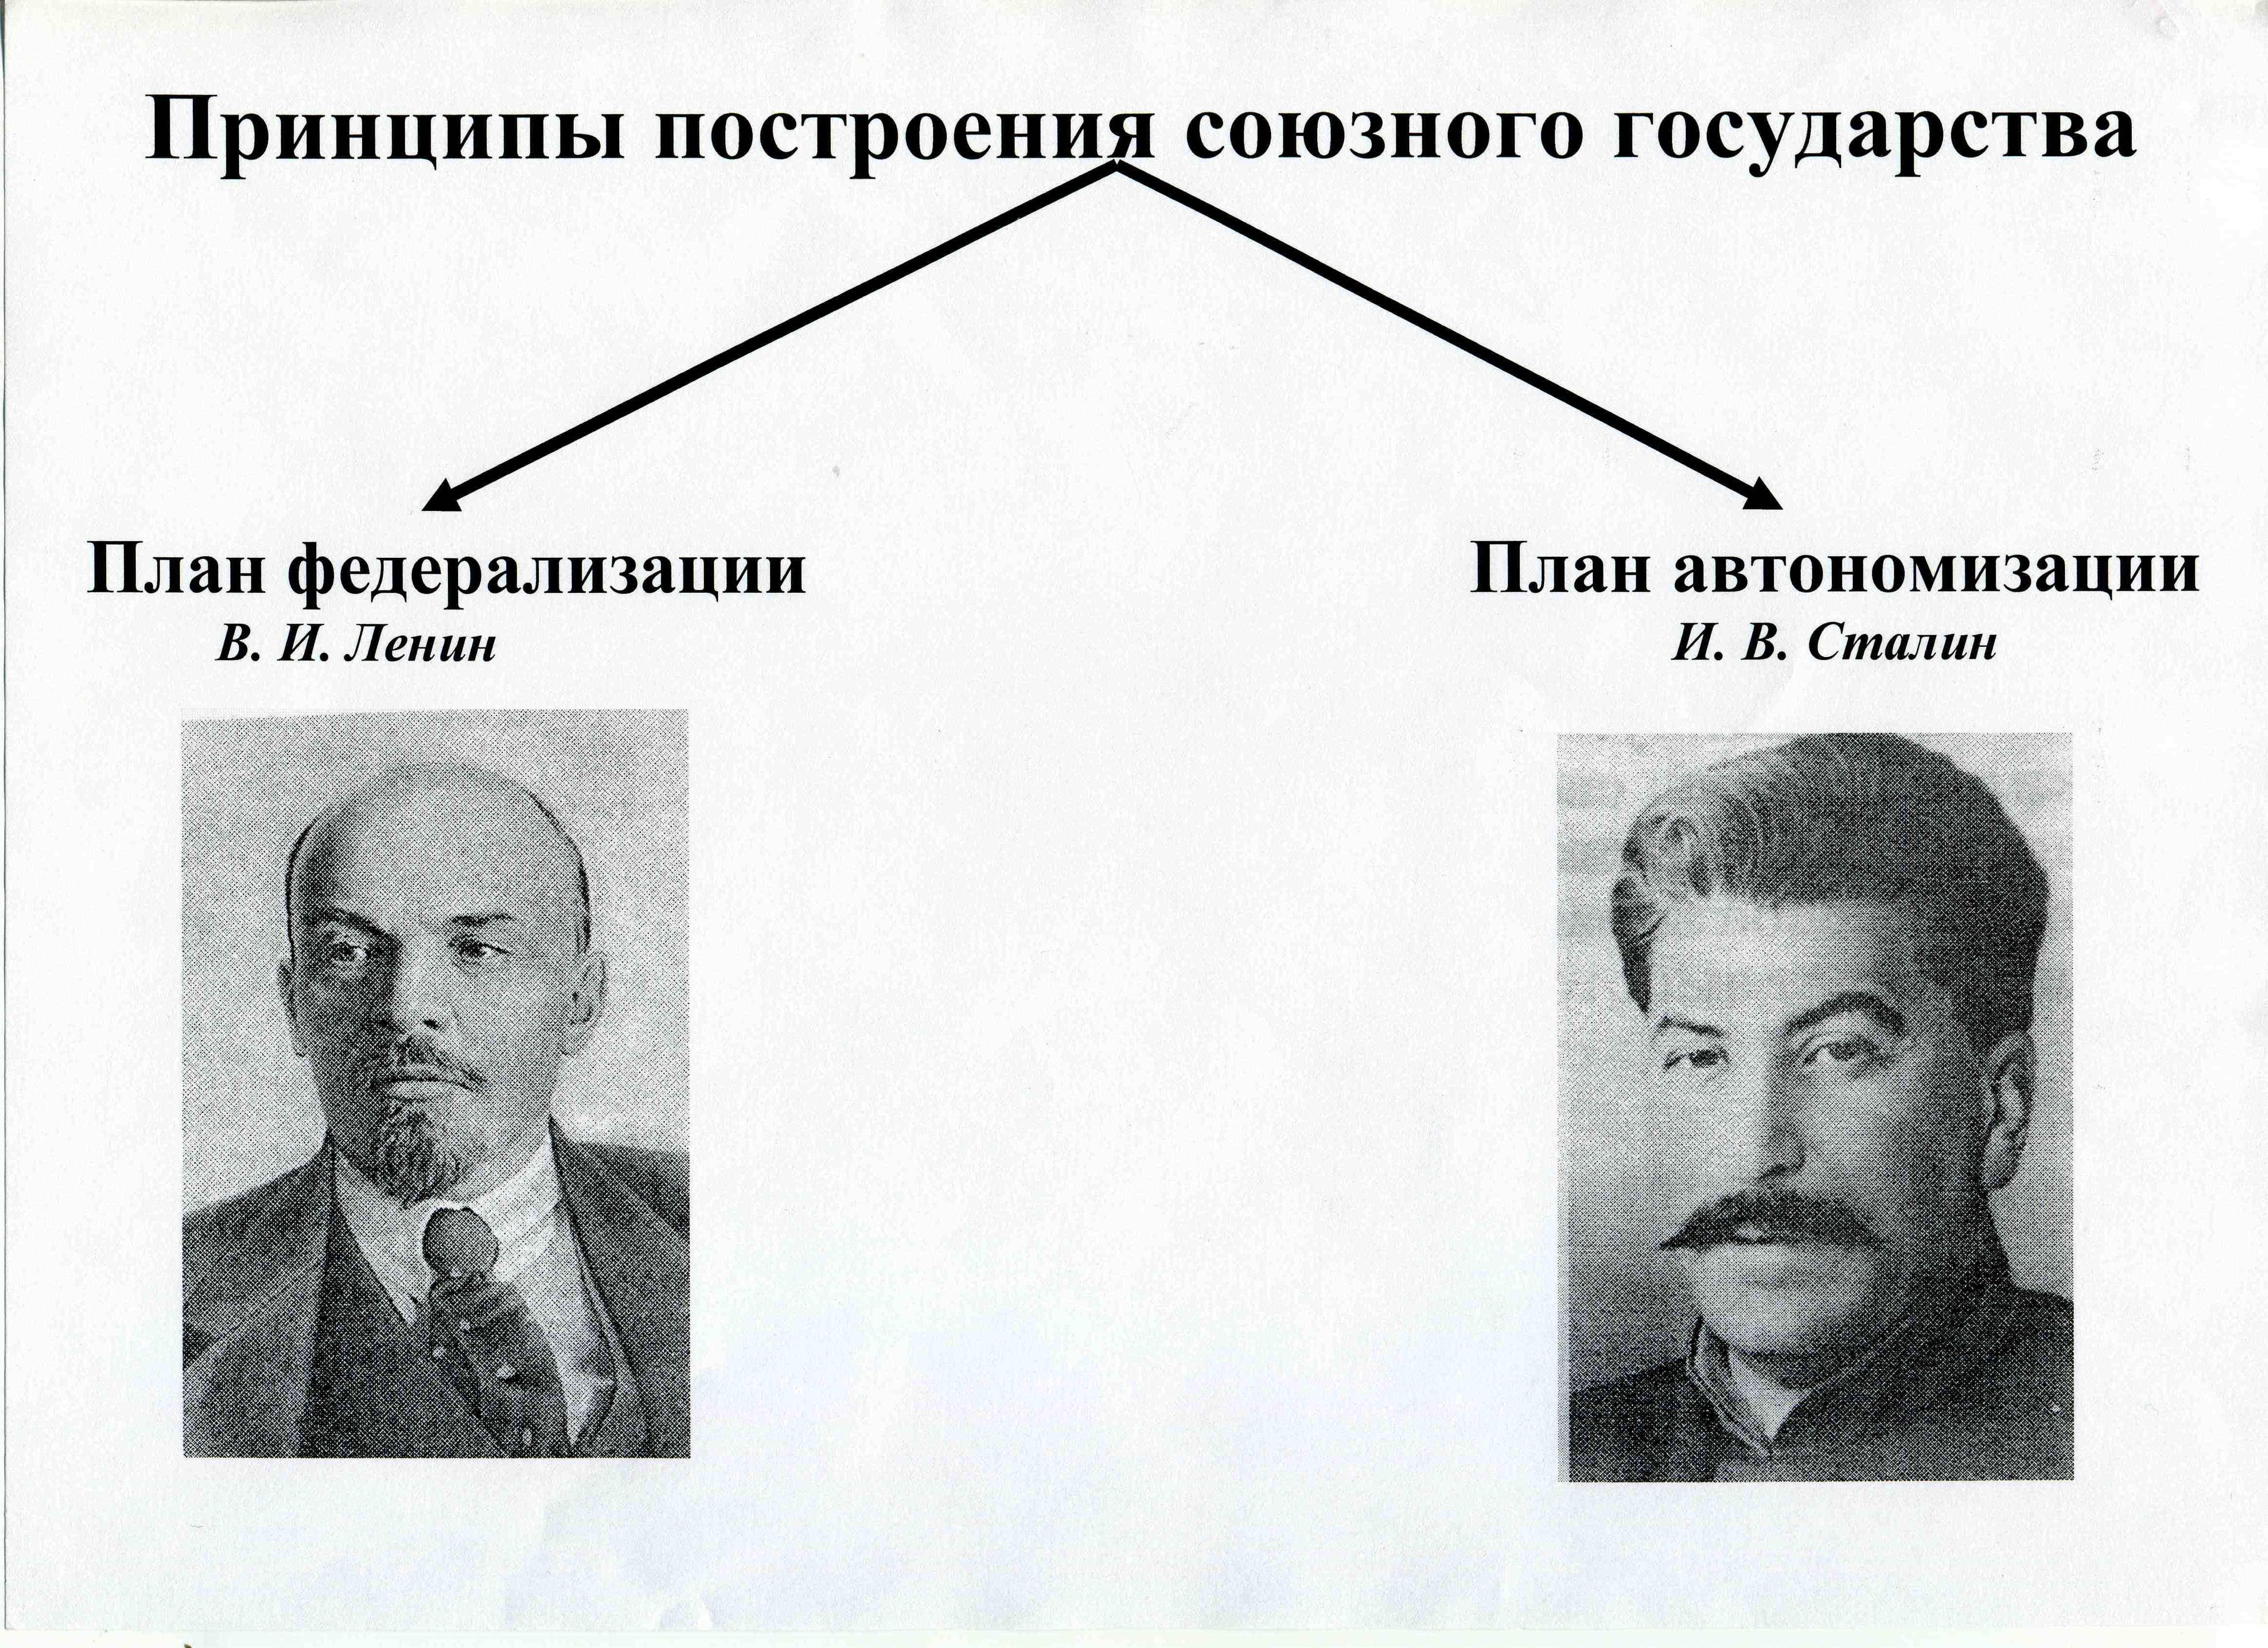 Конспект урока в 9 классе. Образование СССР.